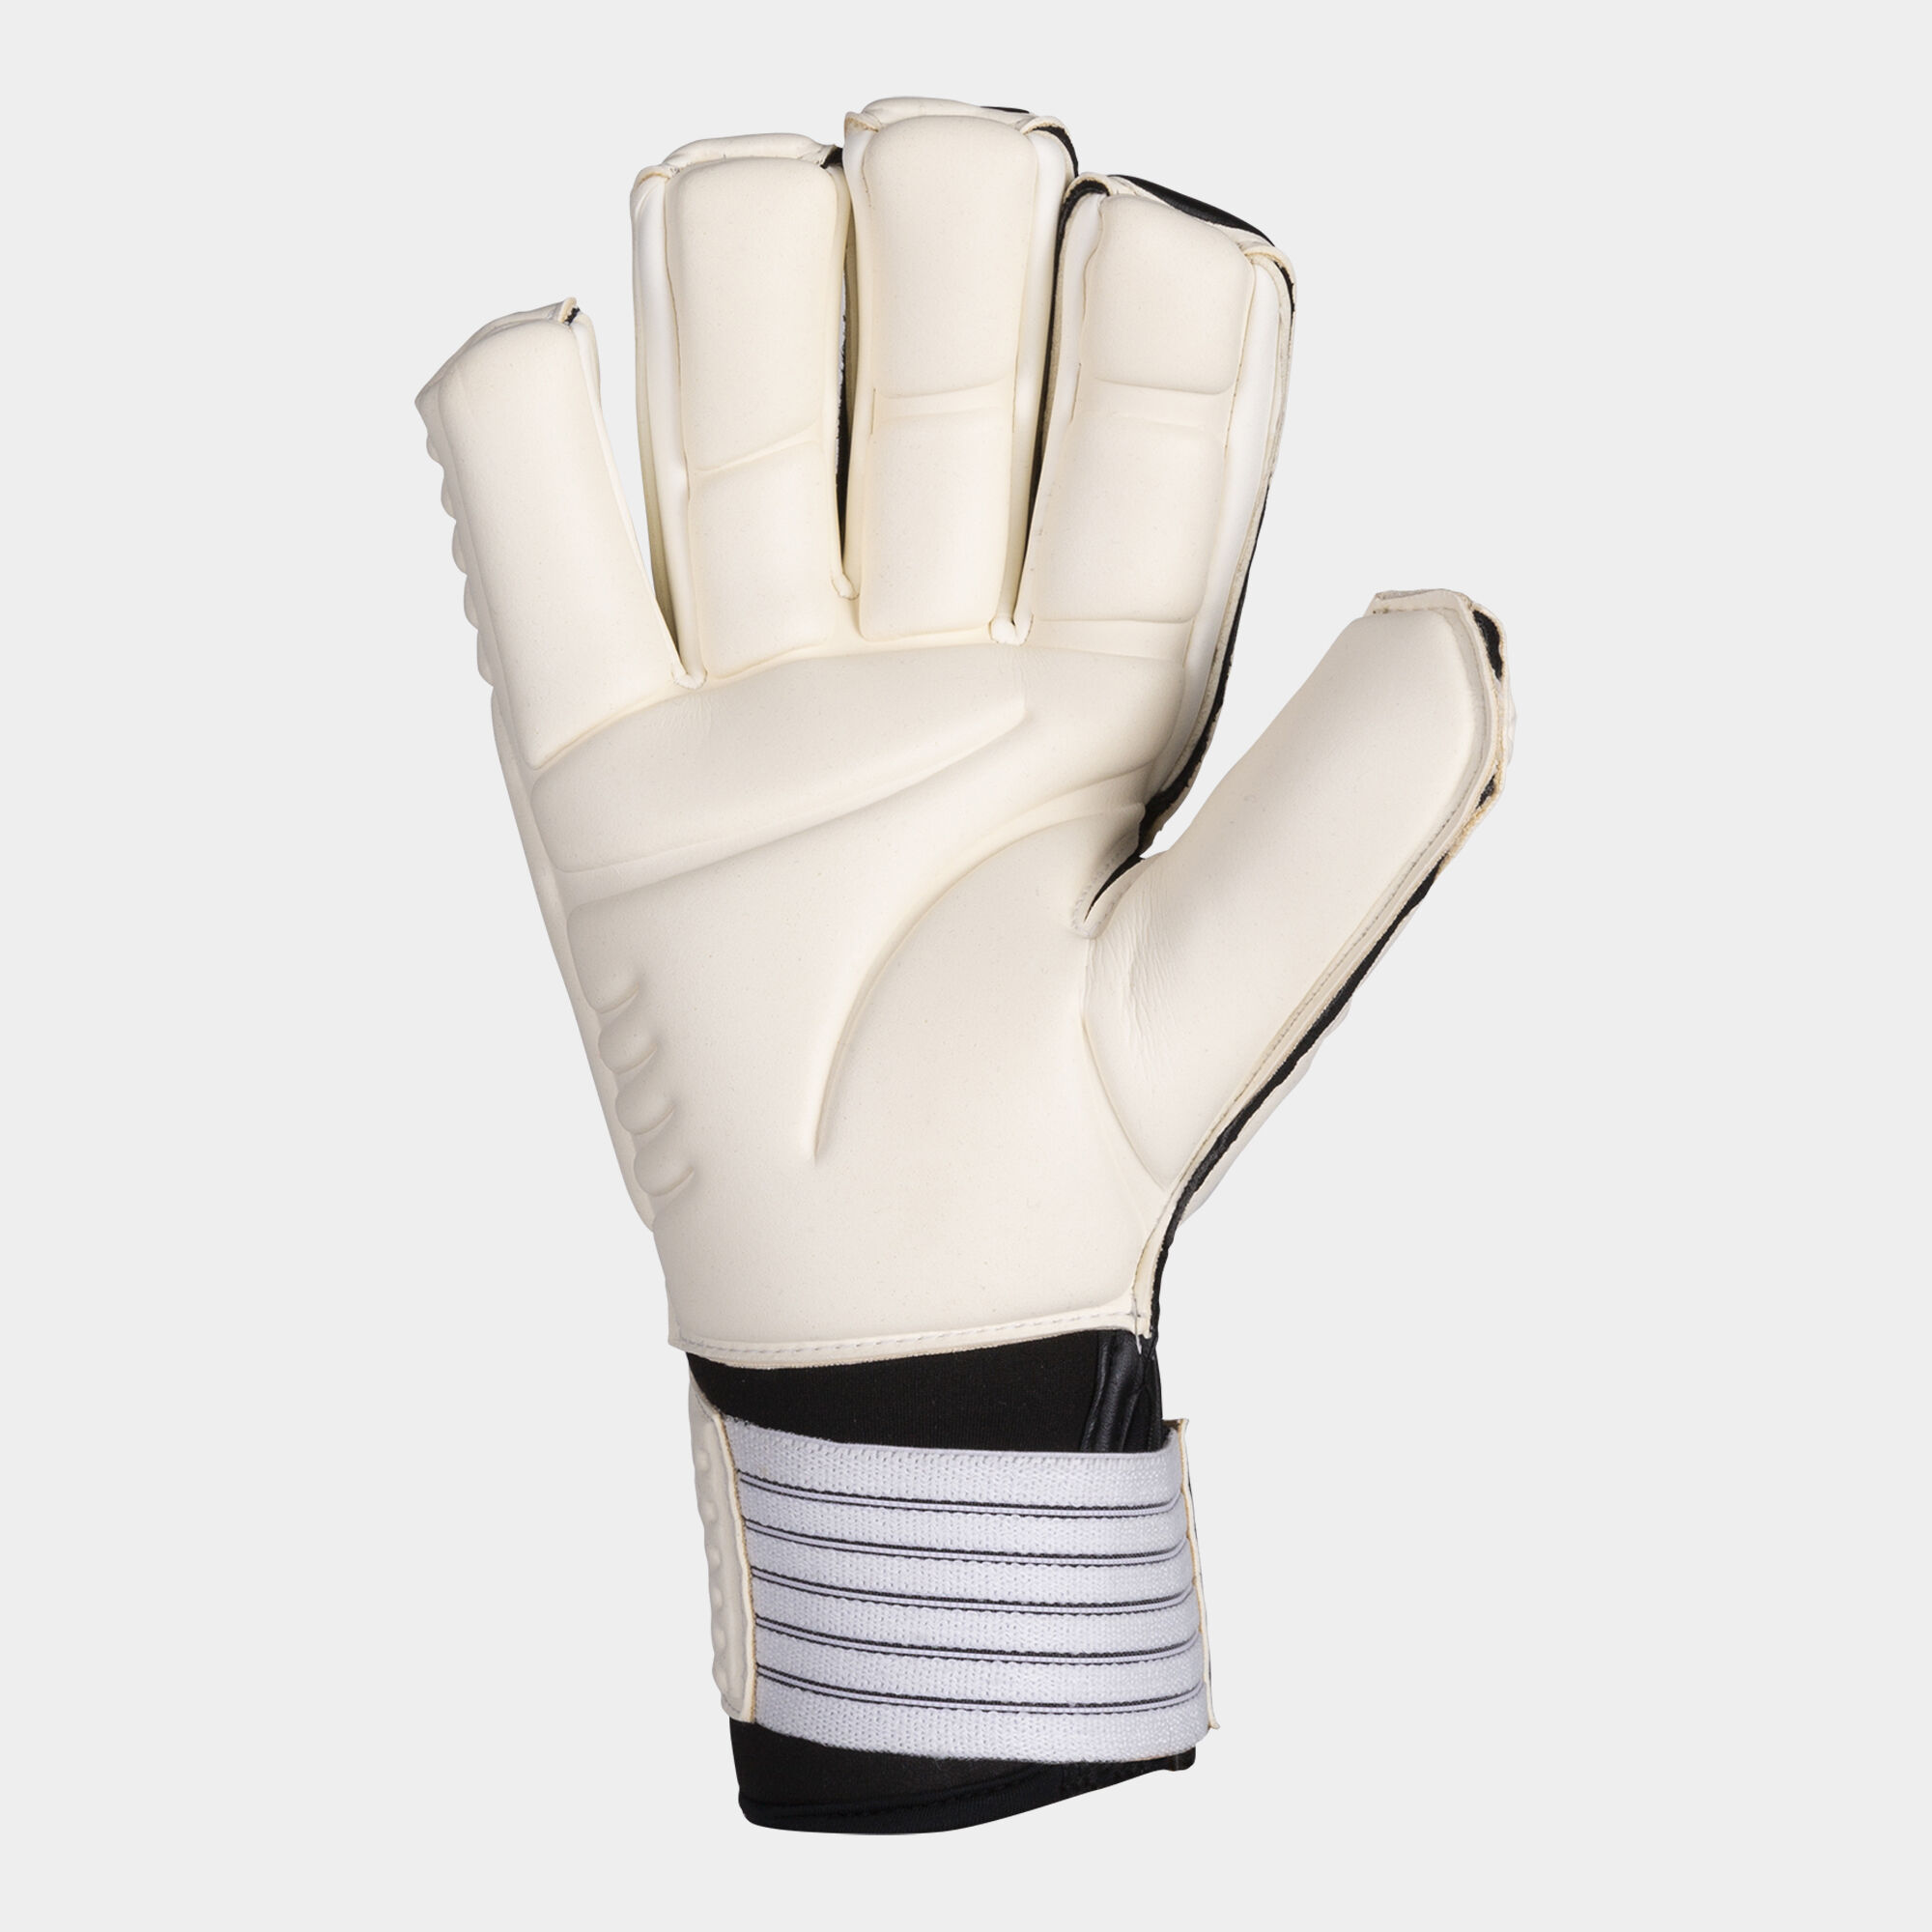 Football goalkeeper gloves Area 19 white black